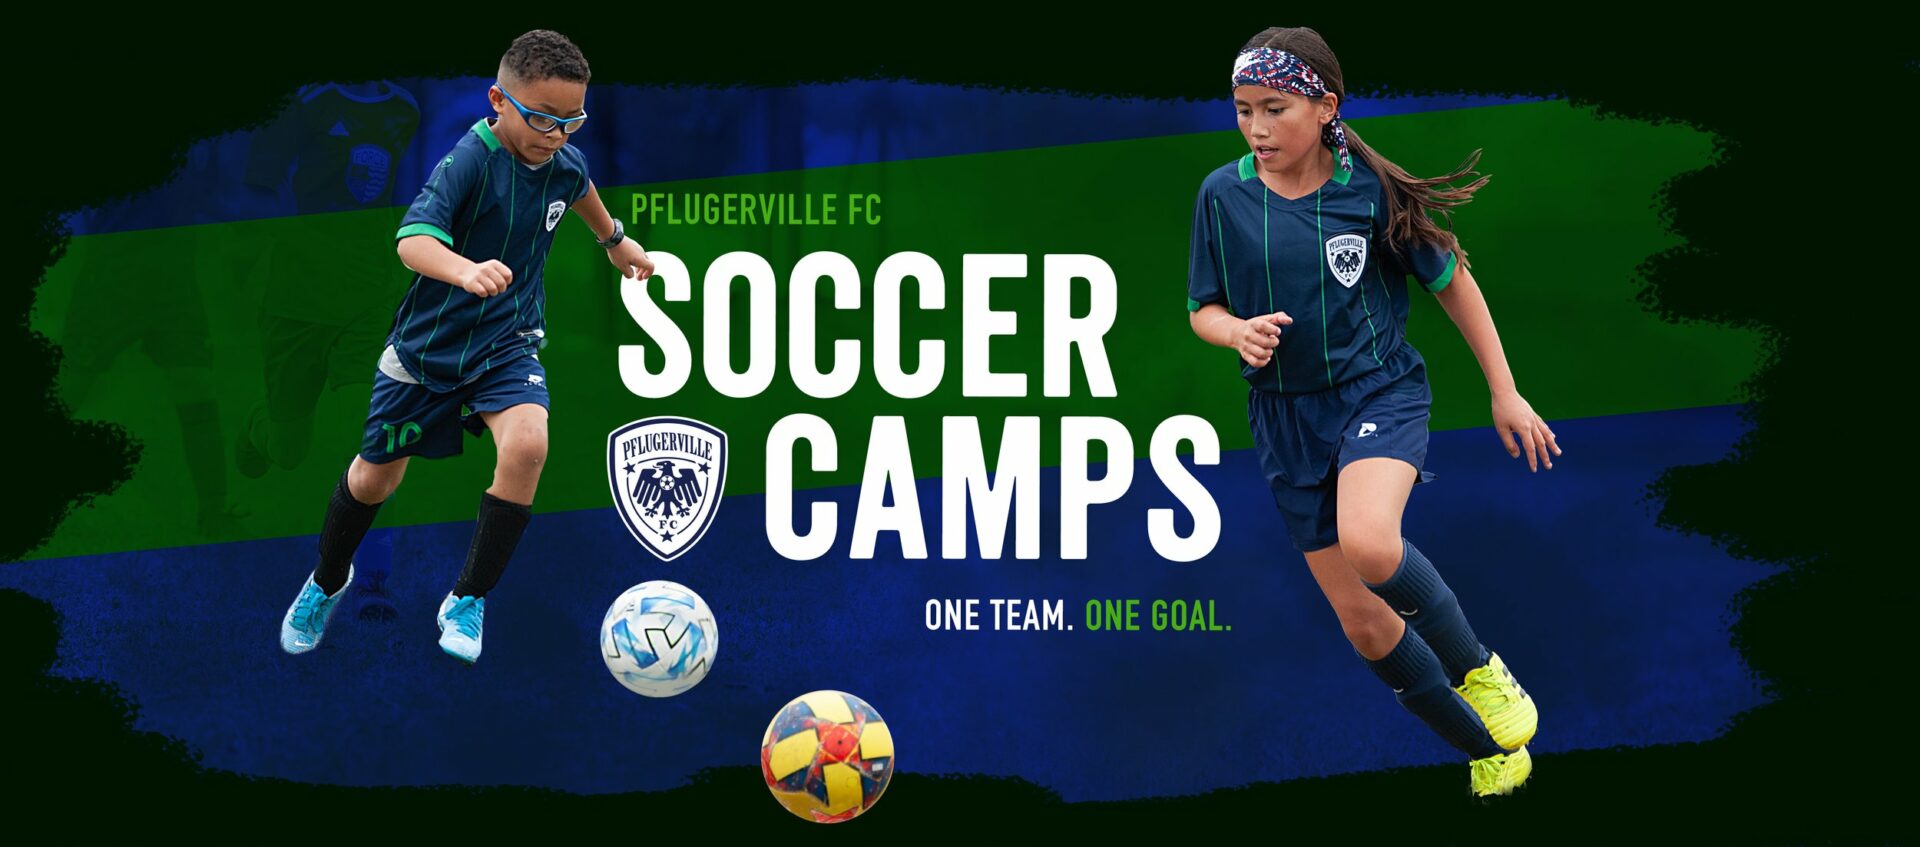 Select Soccer Summer Camp – Pflugerville FC